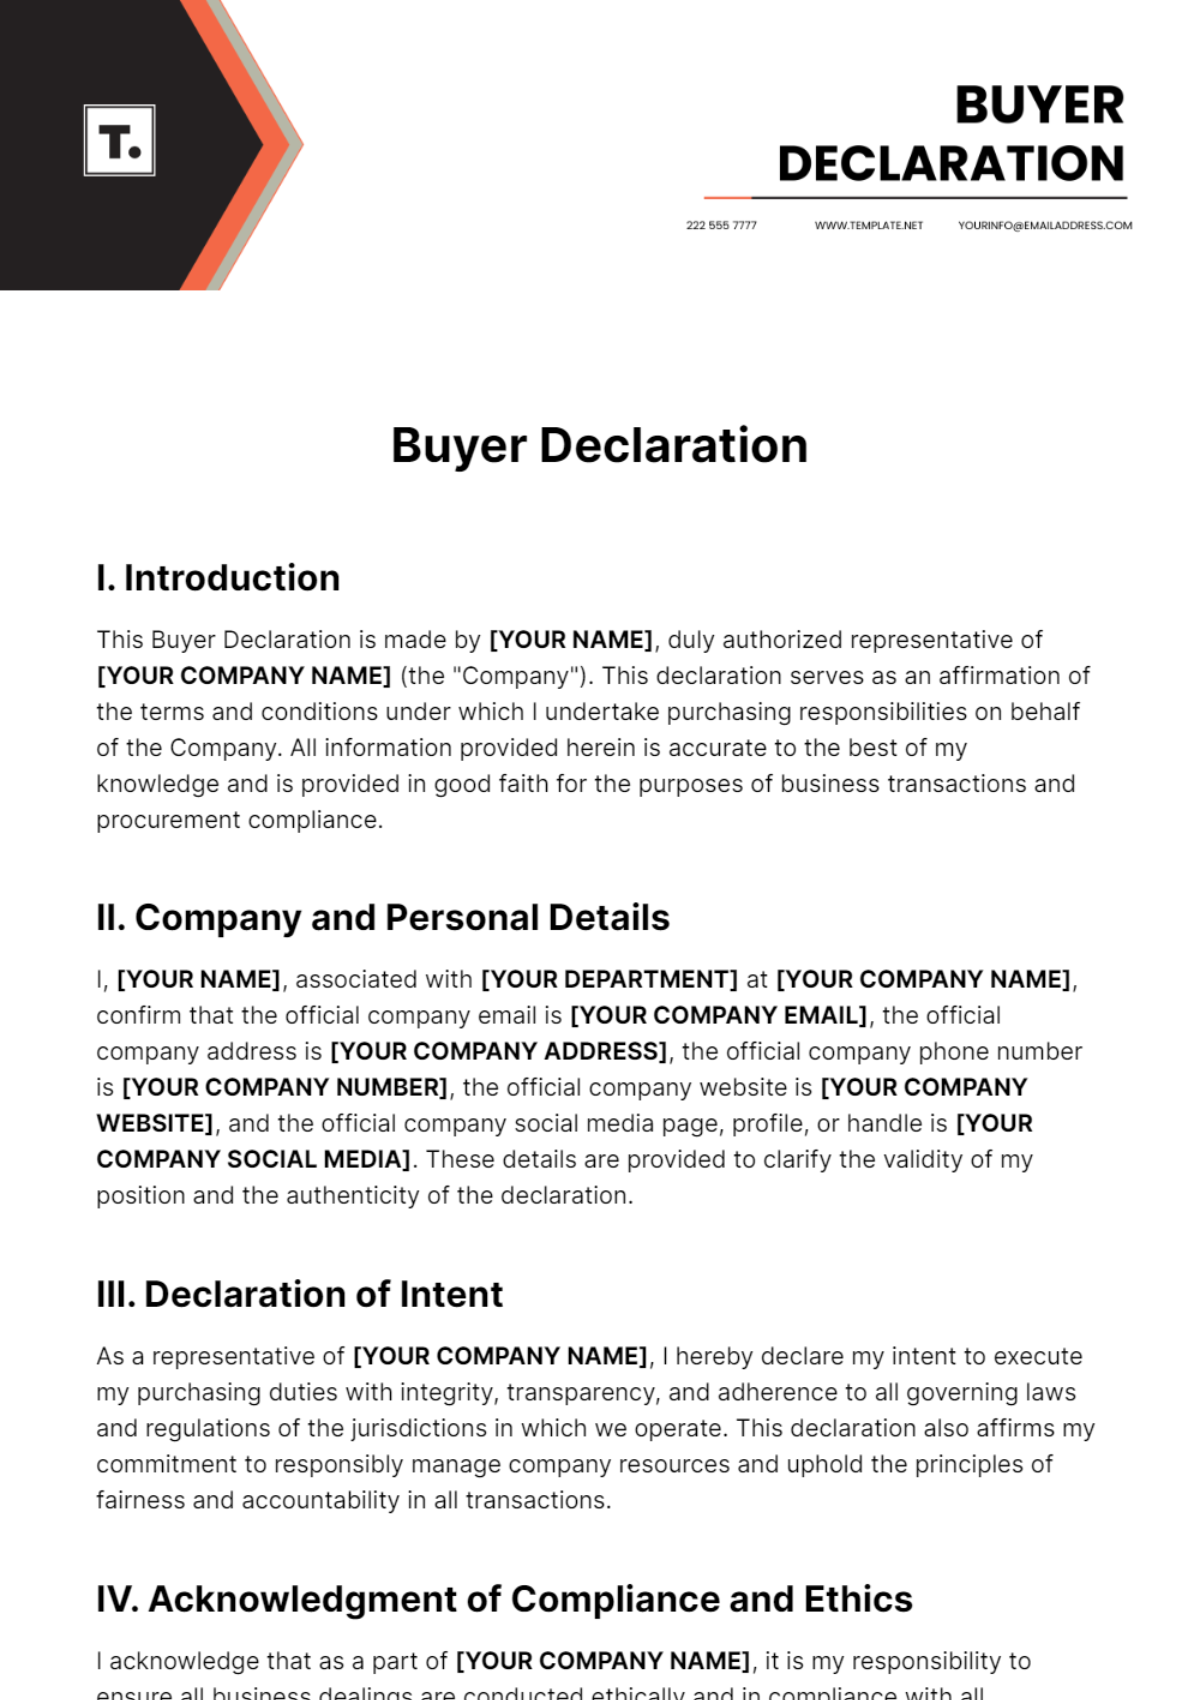 Buyer Declaration Template